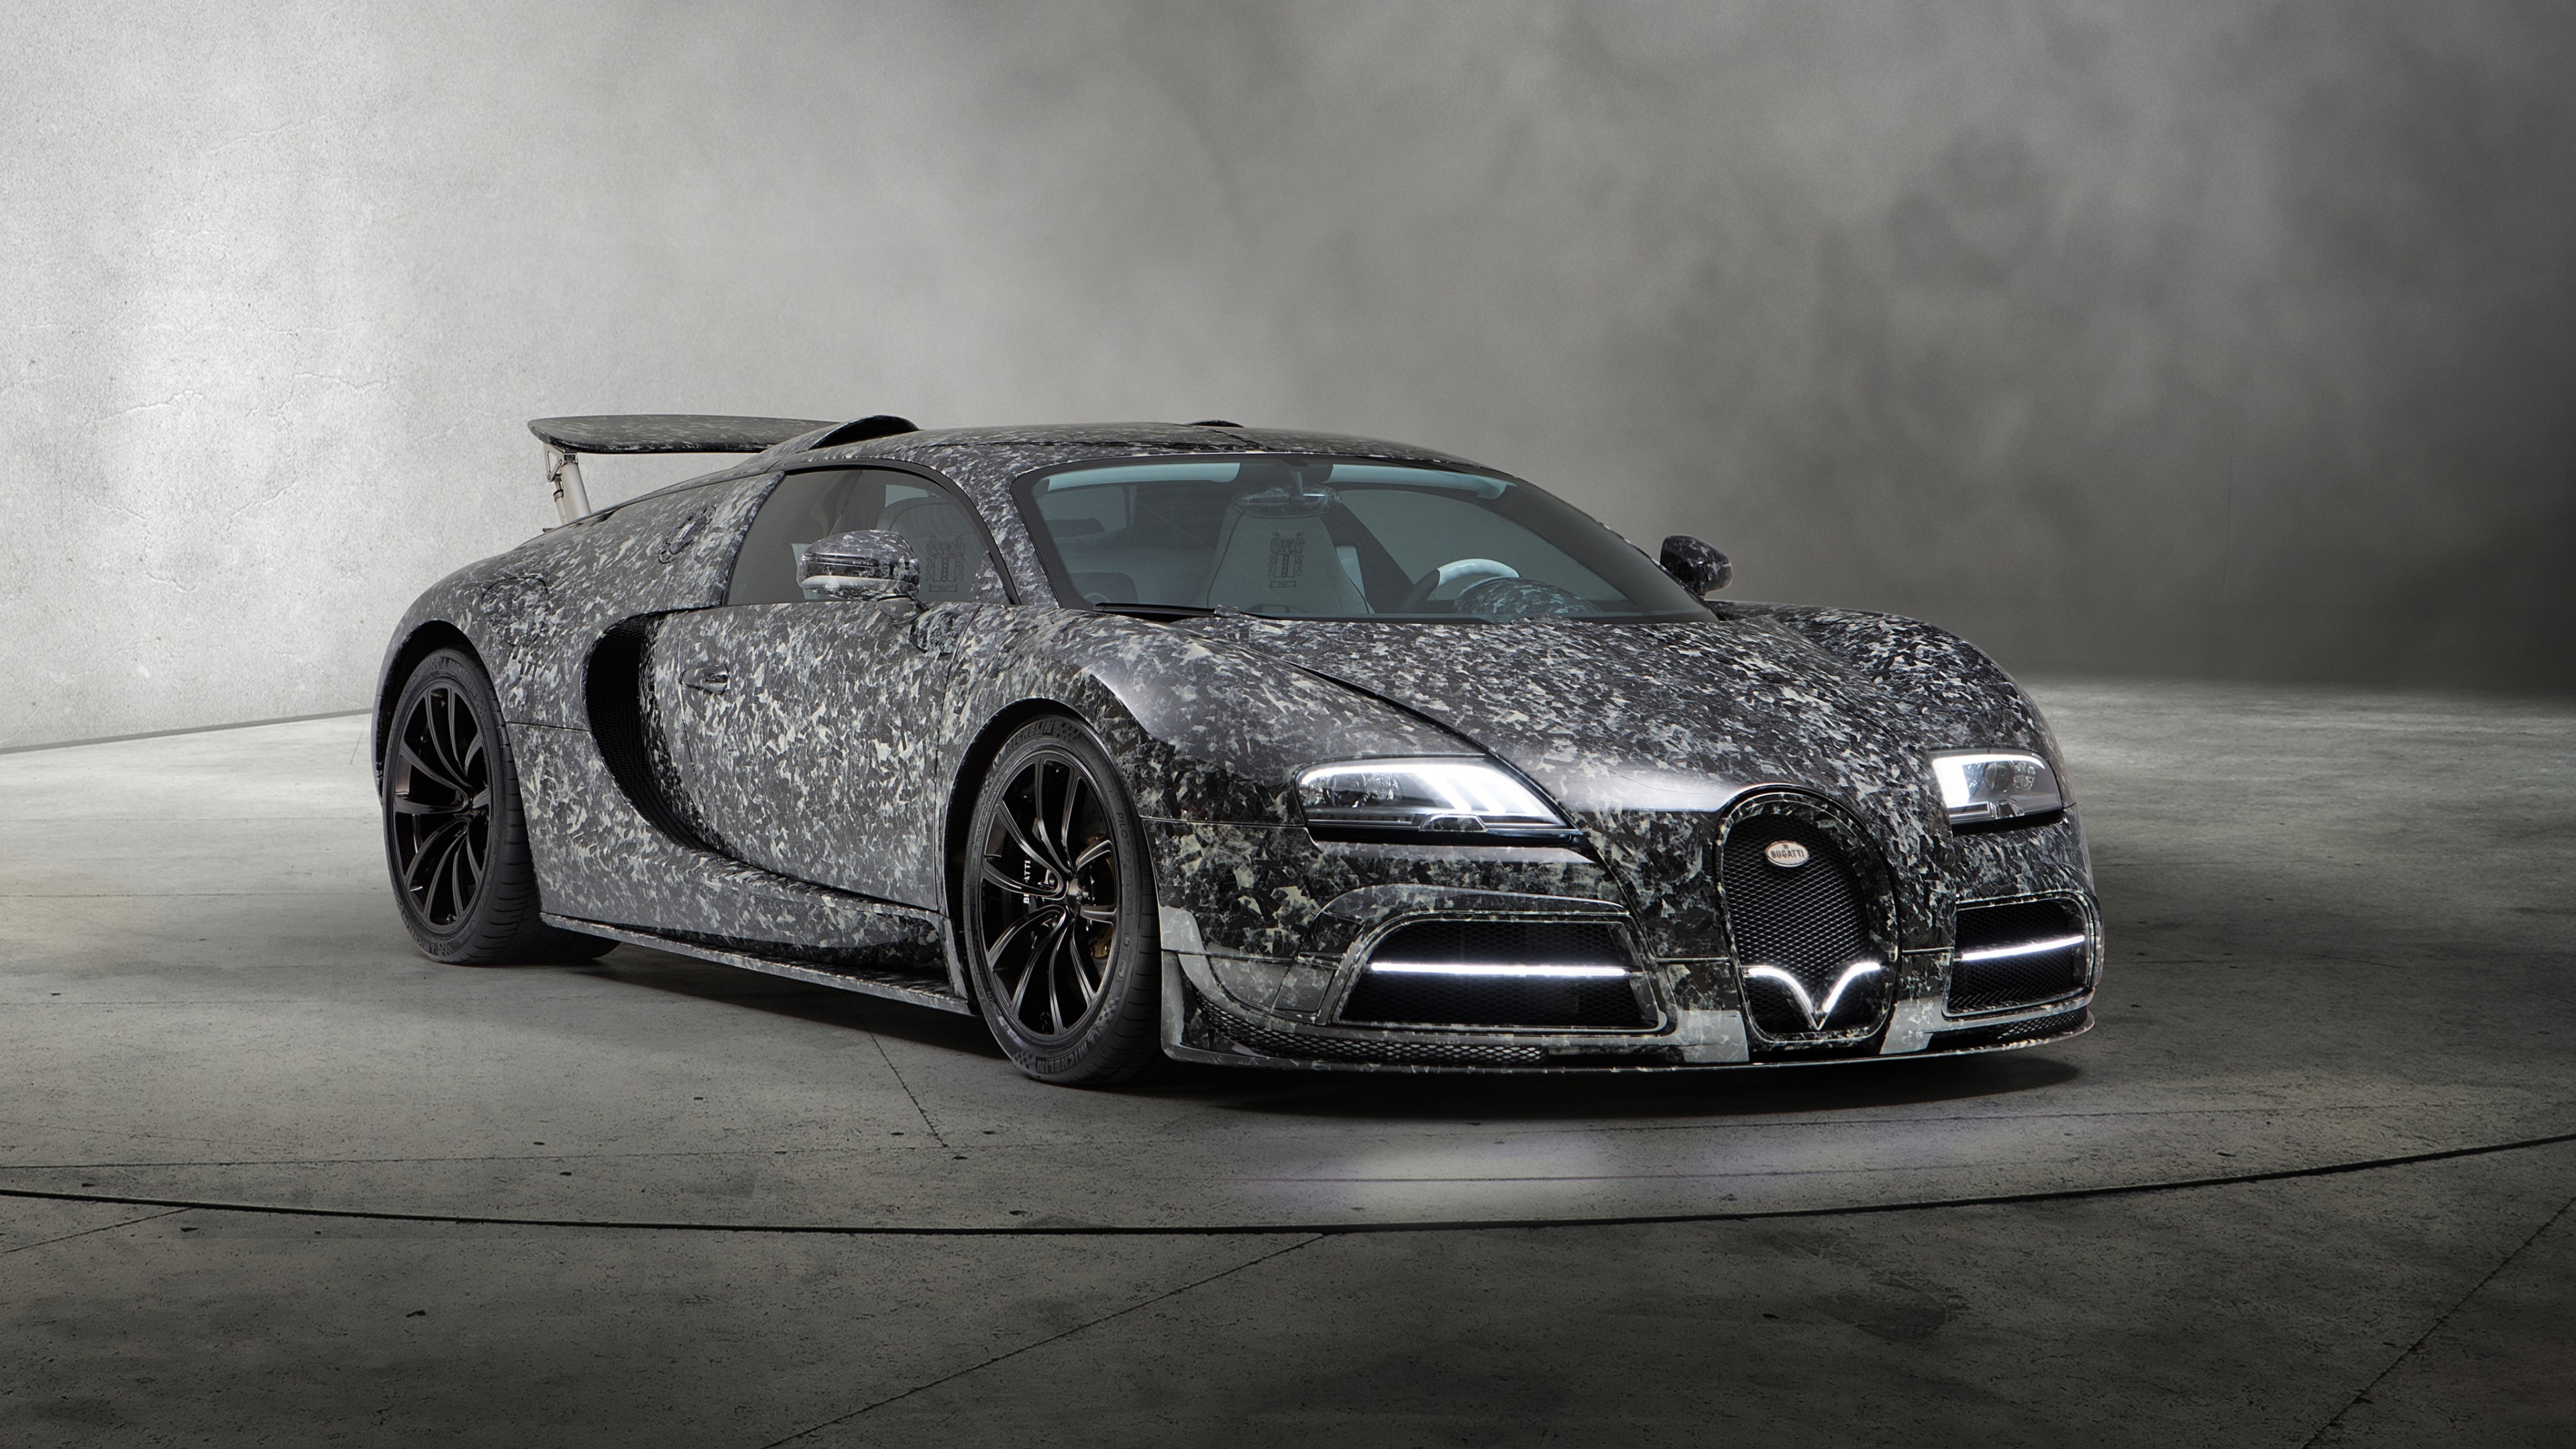 Bugatti Chiron Wallpaper Hd For Android